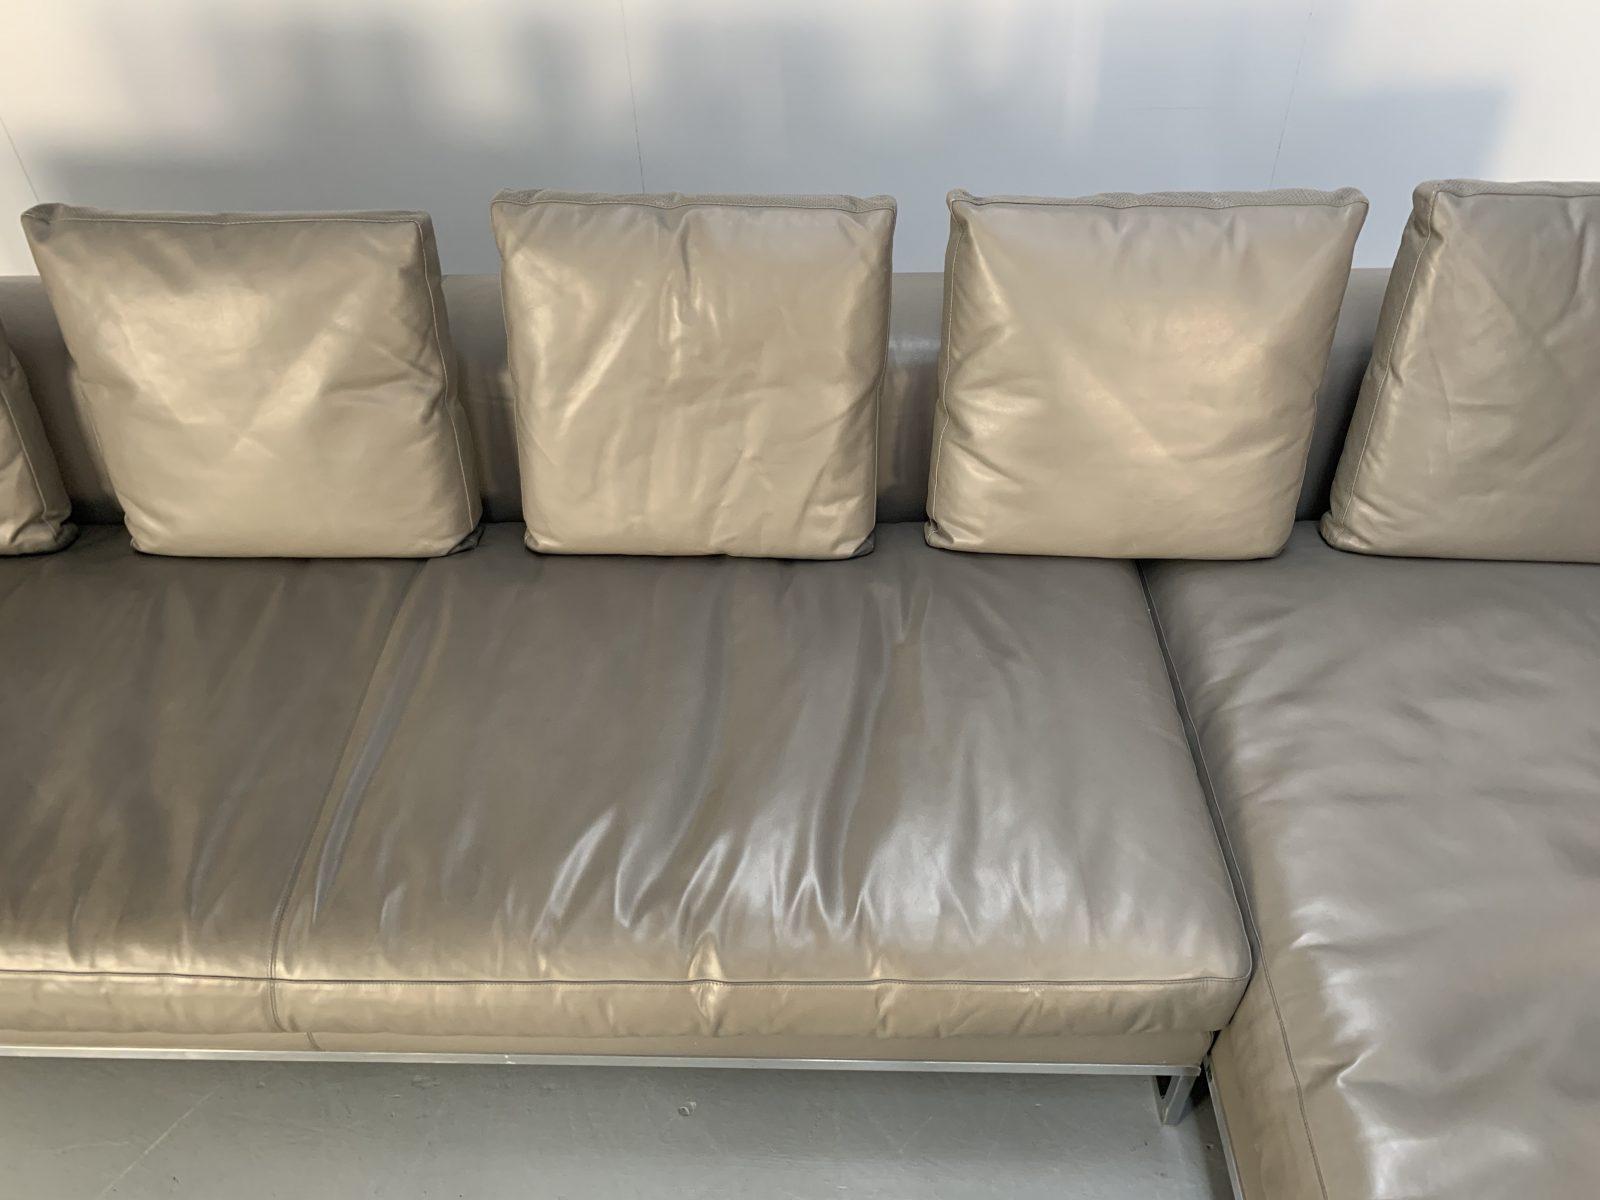 gamma leather sofa